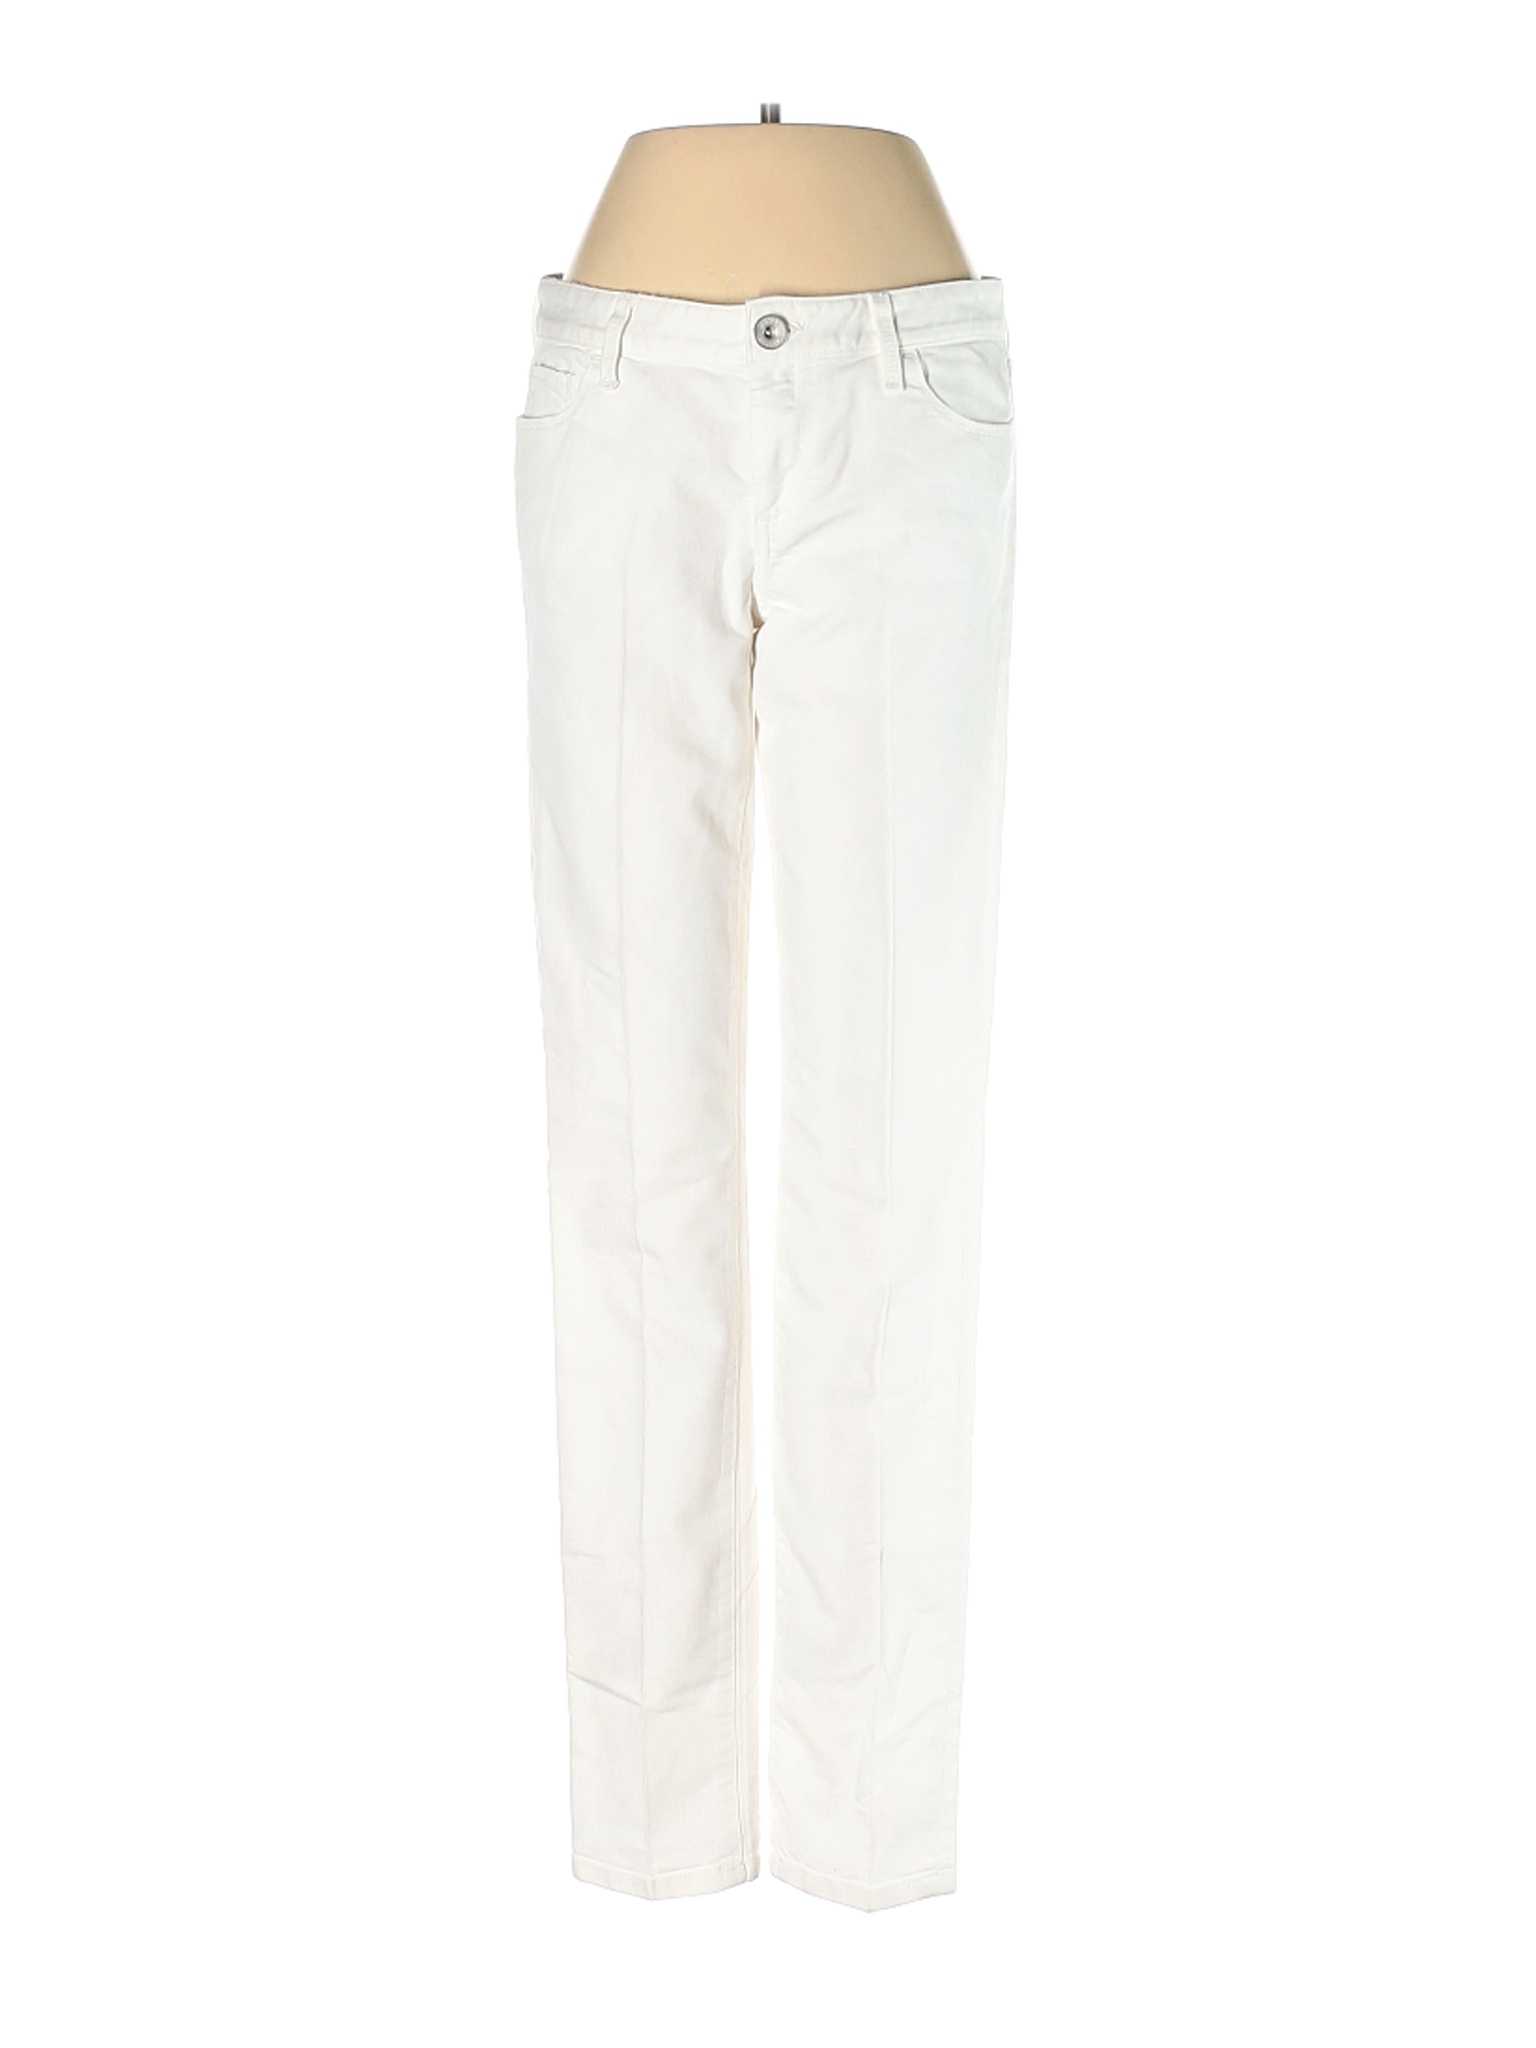 Banana Republic Women White Jeans 27W | eBay